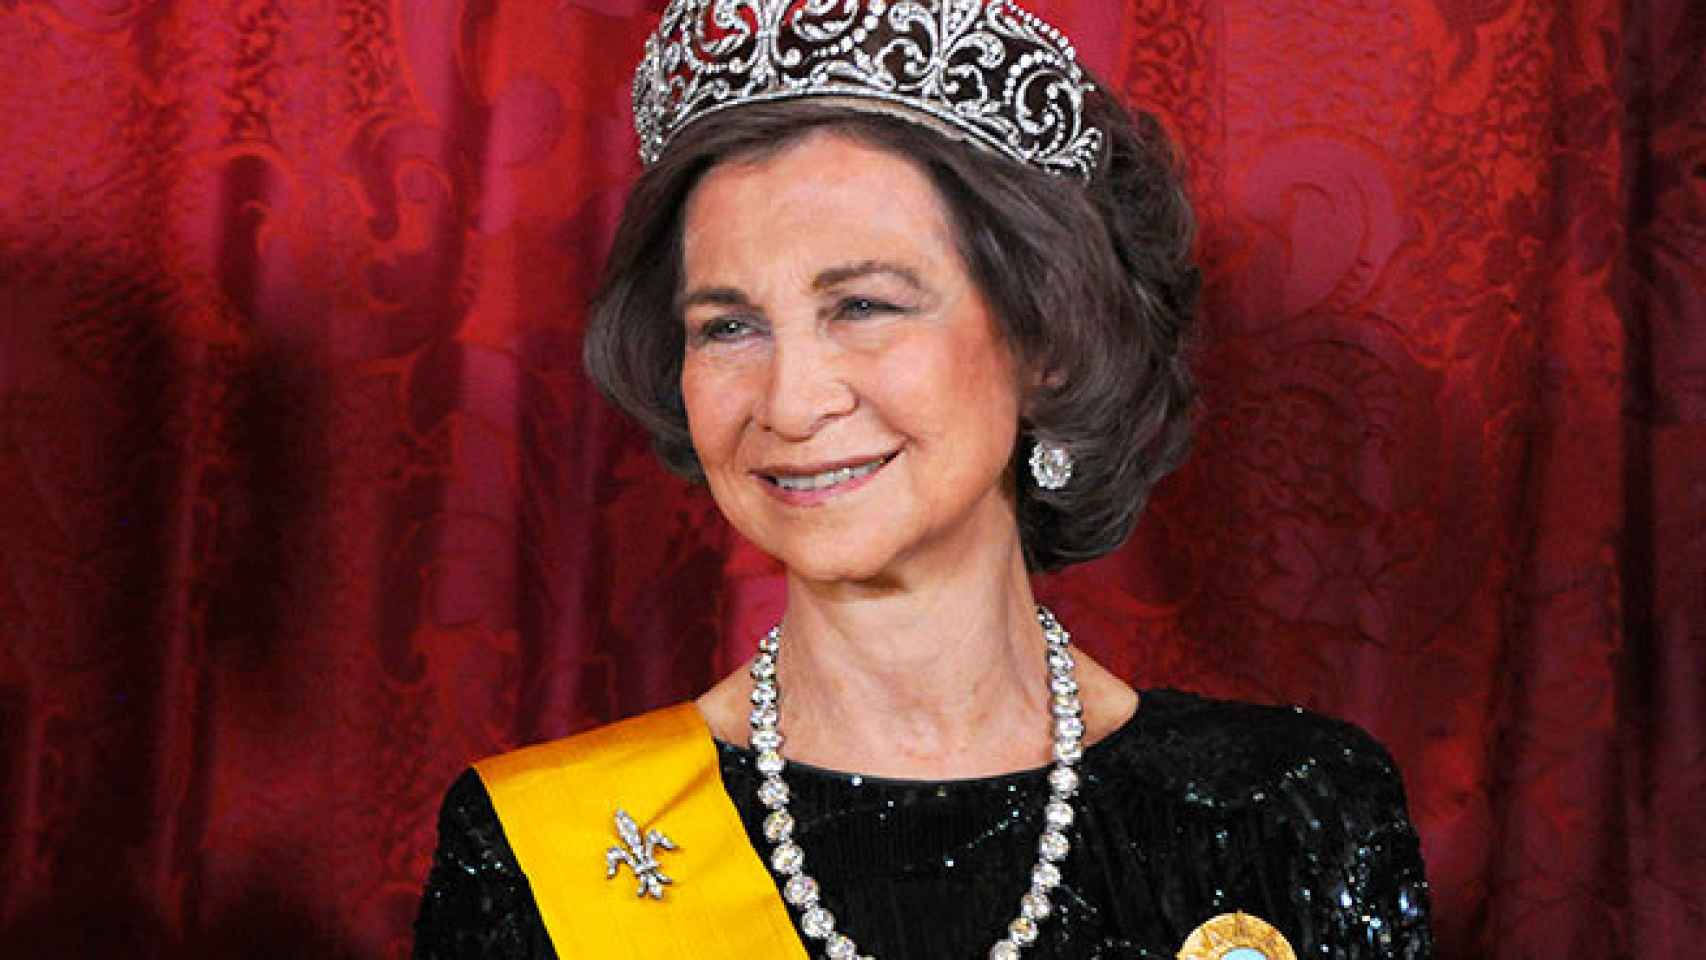 La reina Sofía con la tiara de la flor de lis.